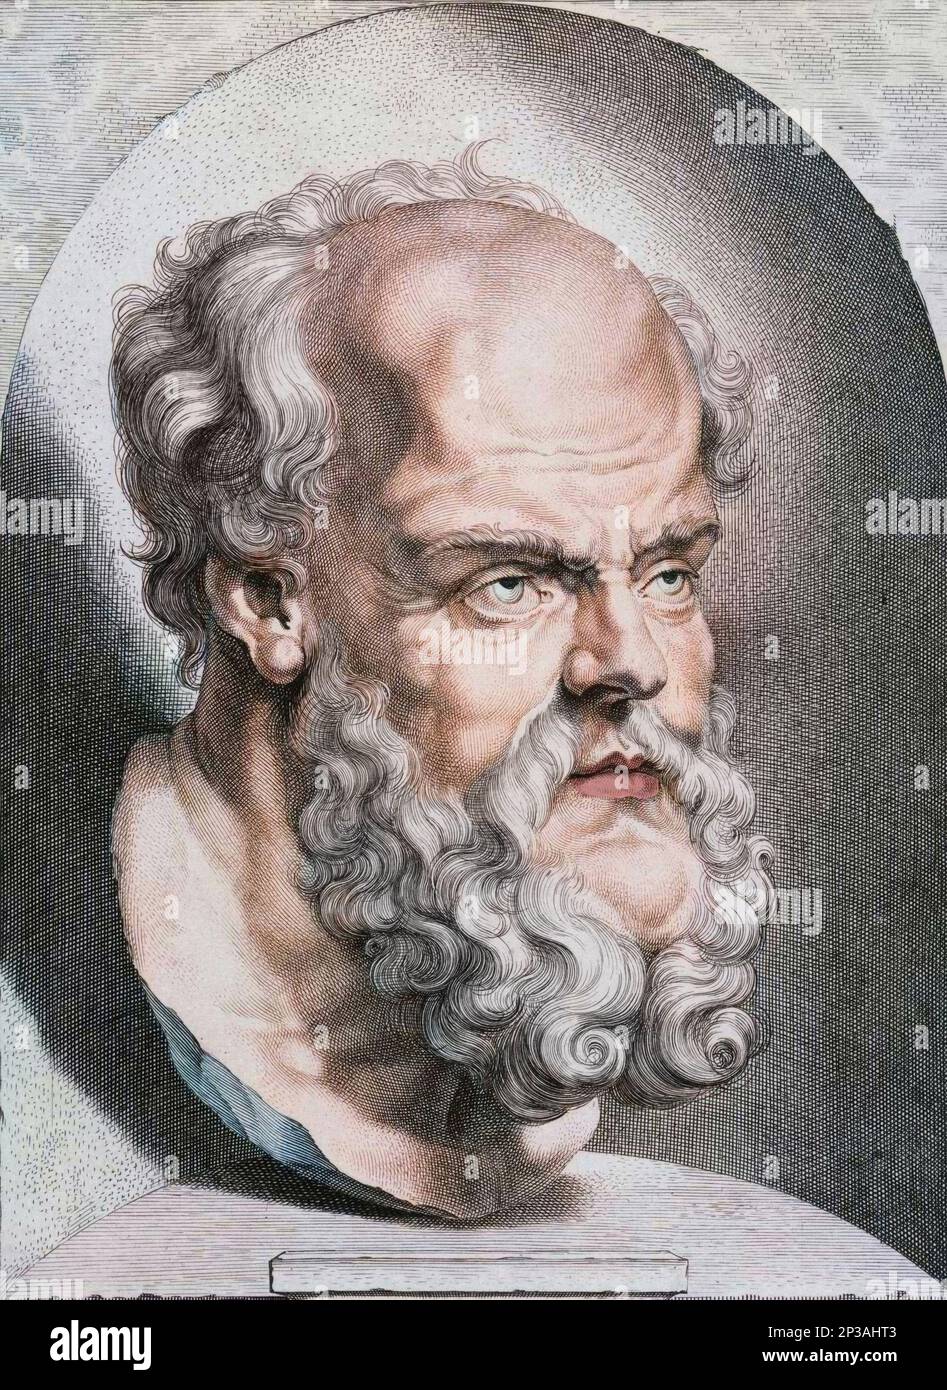 Buste de Socrate Philosophe de la Grece Antique (5eme Siecle AV JC.). Gravure couleur du 17eme siecle. Stockfoto